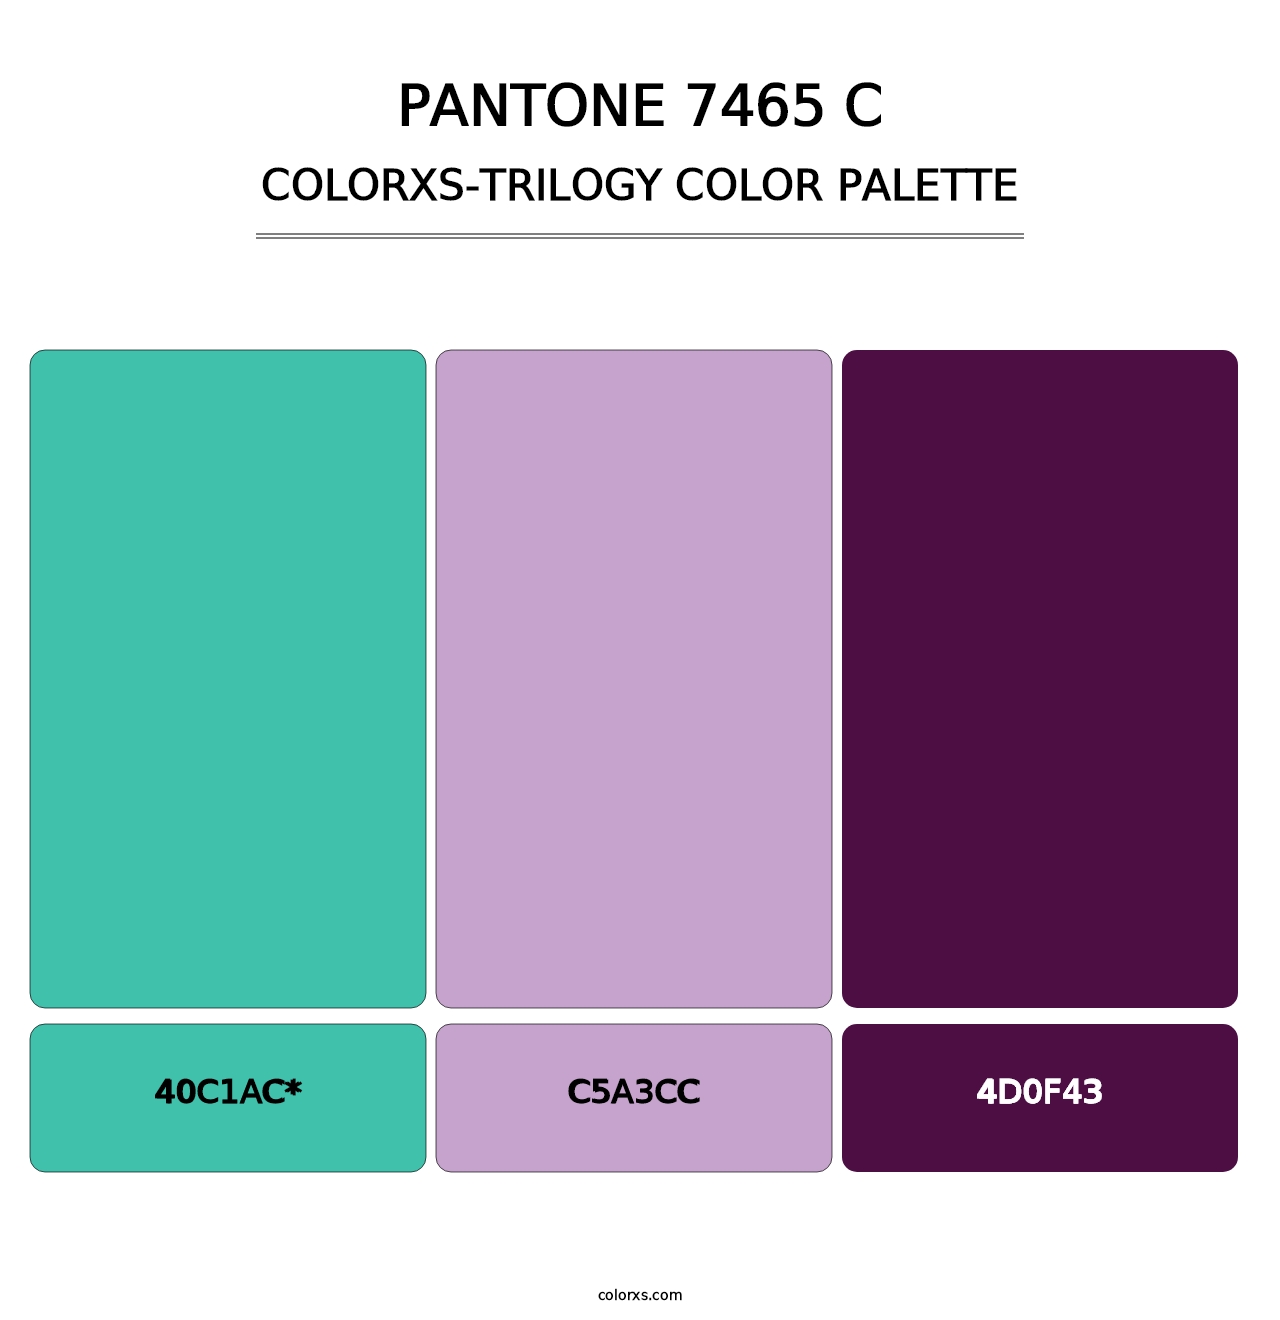 PANTONE 7465 C - Colorxs Trilogy Palette